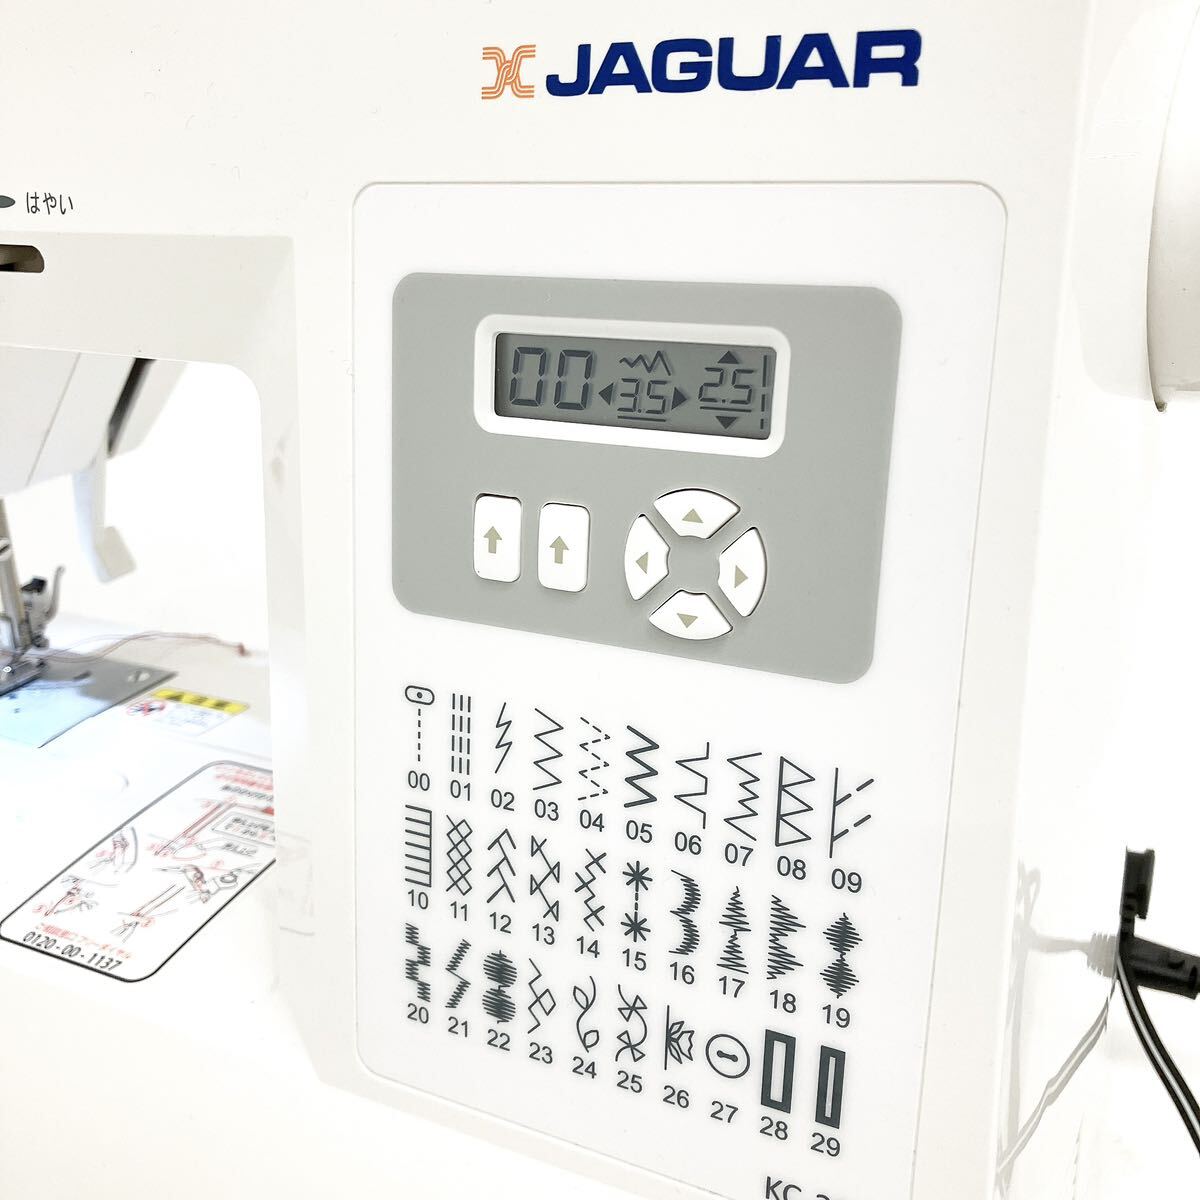  рабочий товар JAGUAR Jaguar KC-230 компьютер швейная машина alp.0313